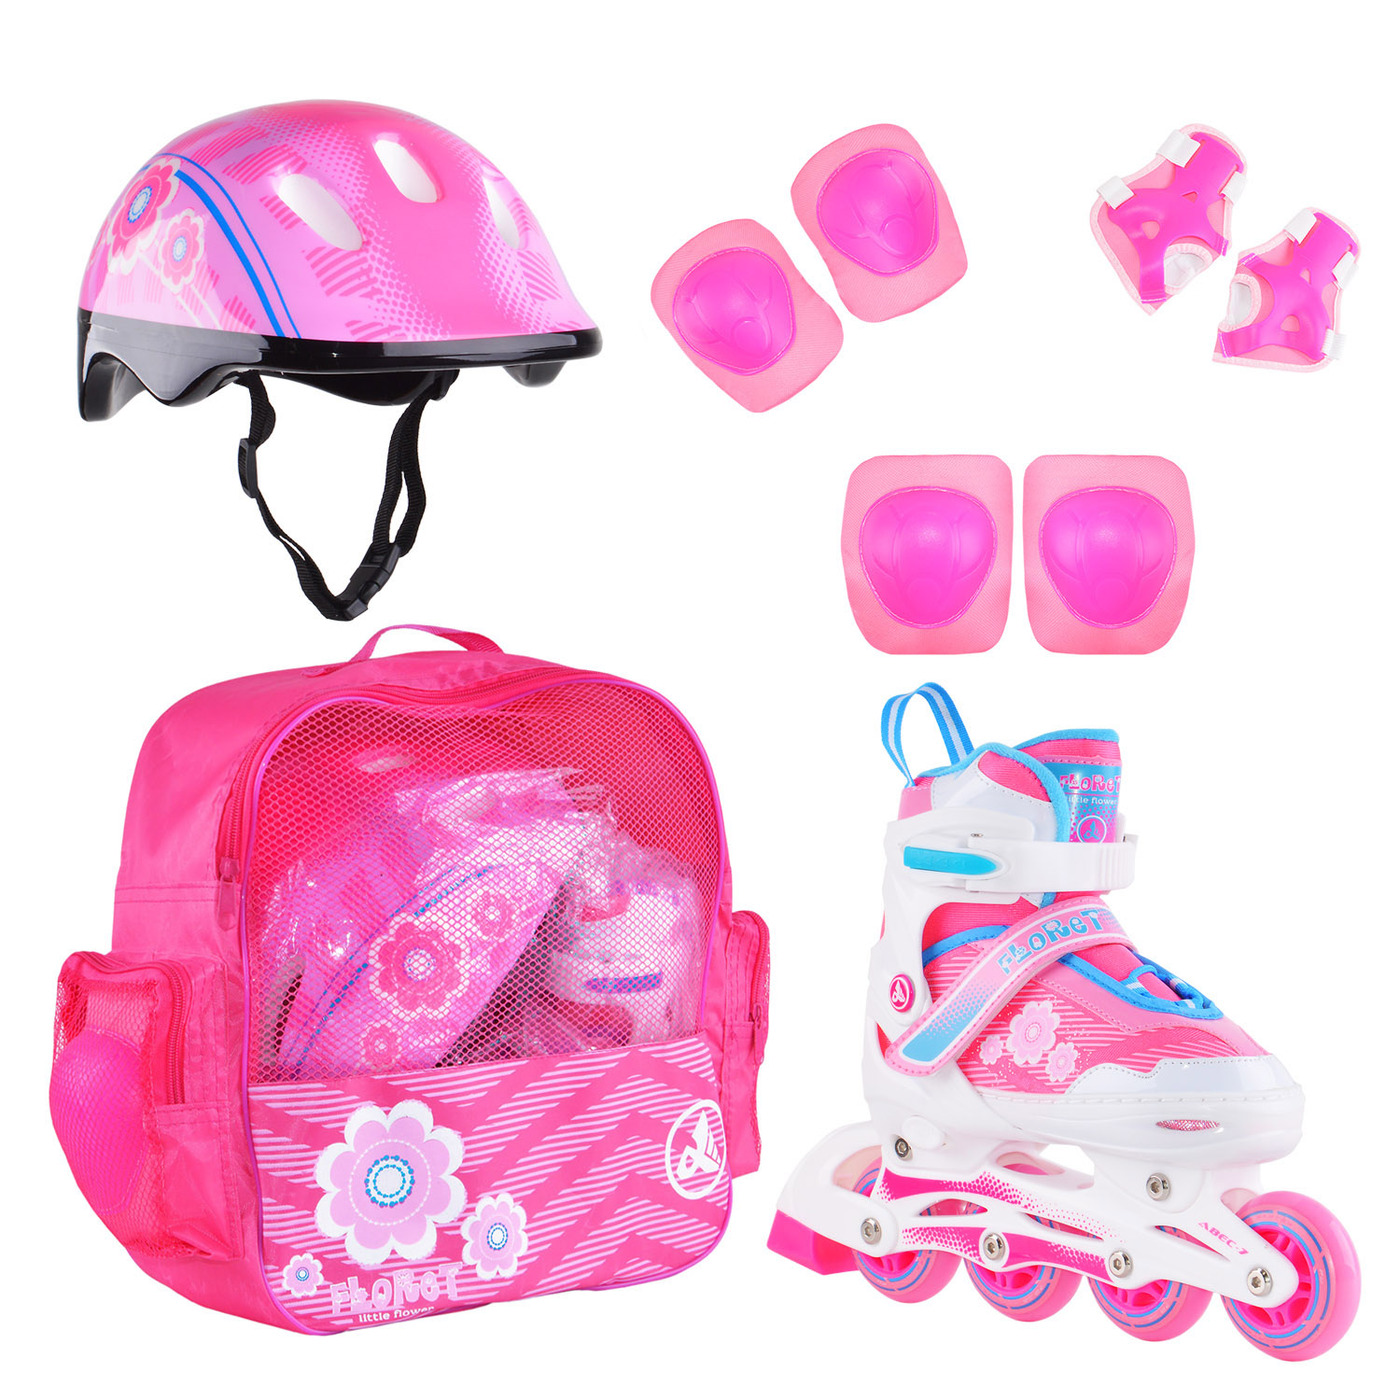 Раздвижные роликовые коньки Alpha Caprice FLORET Wh/Pink/Bl, шлем, защита, сумка M: 35-38 коньки роликовые italtrike